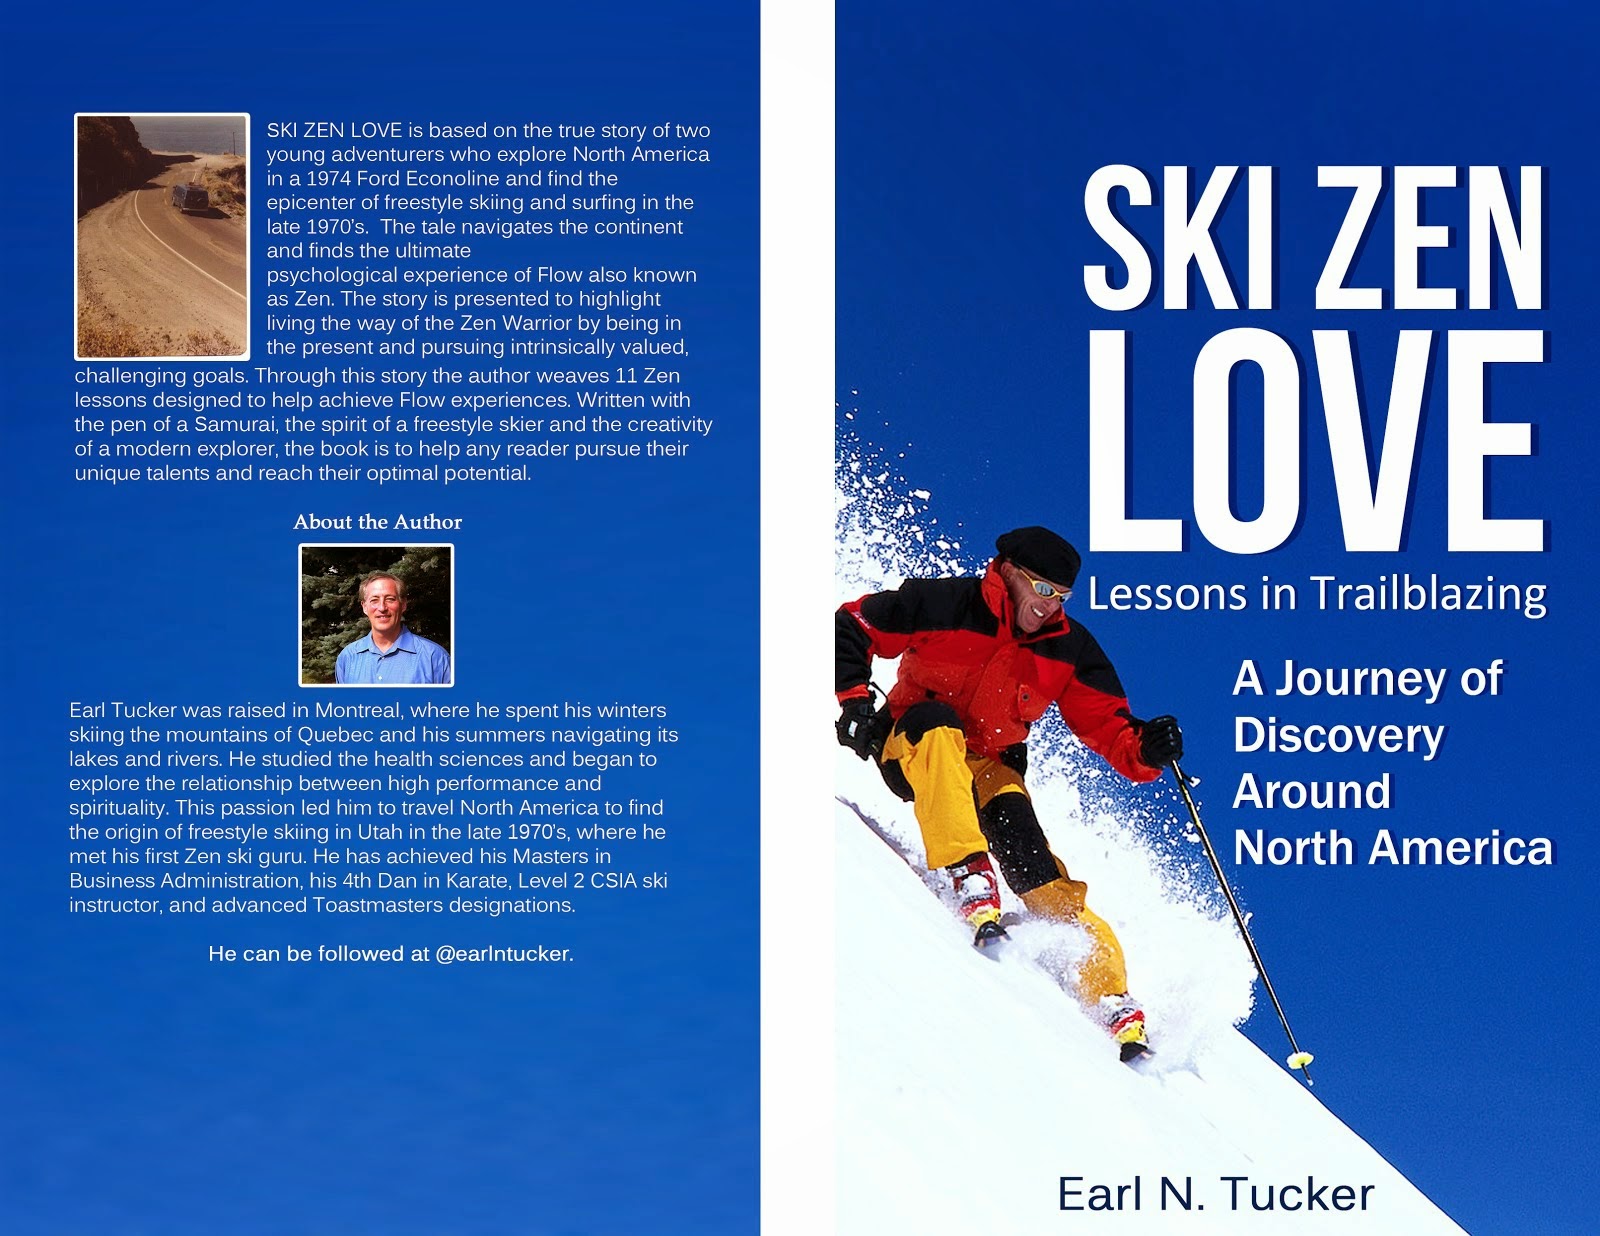 Ski Zen Love